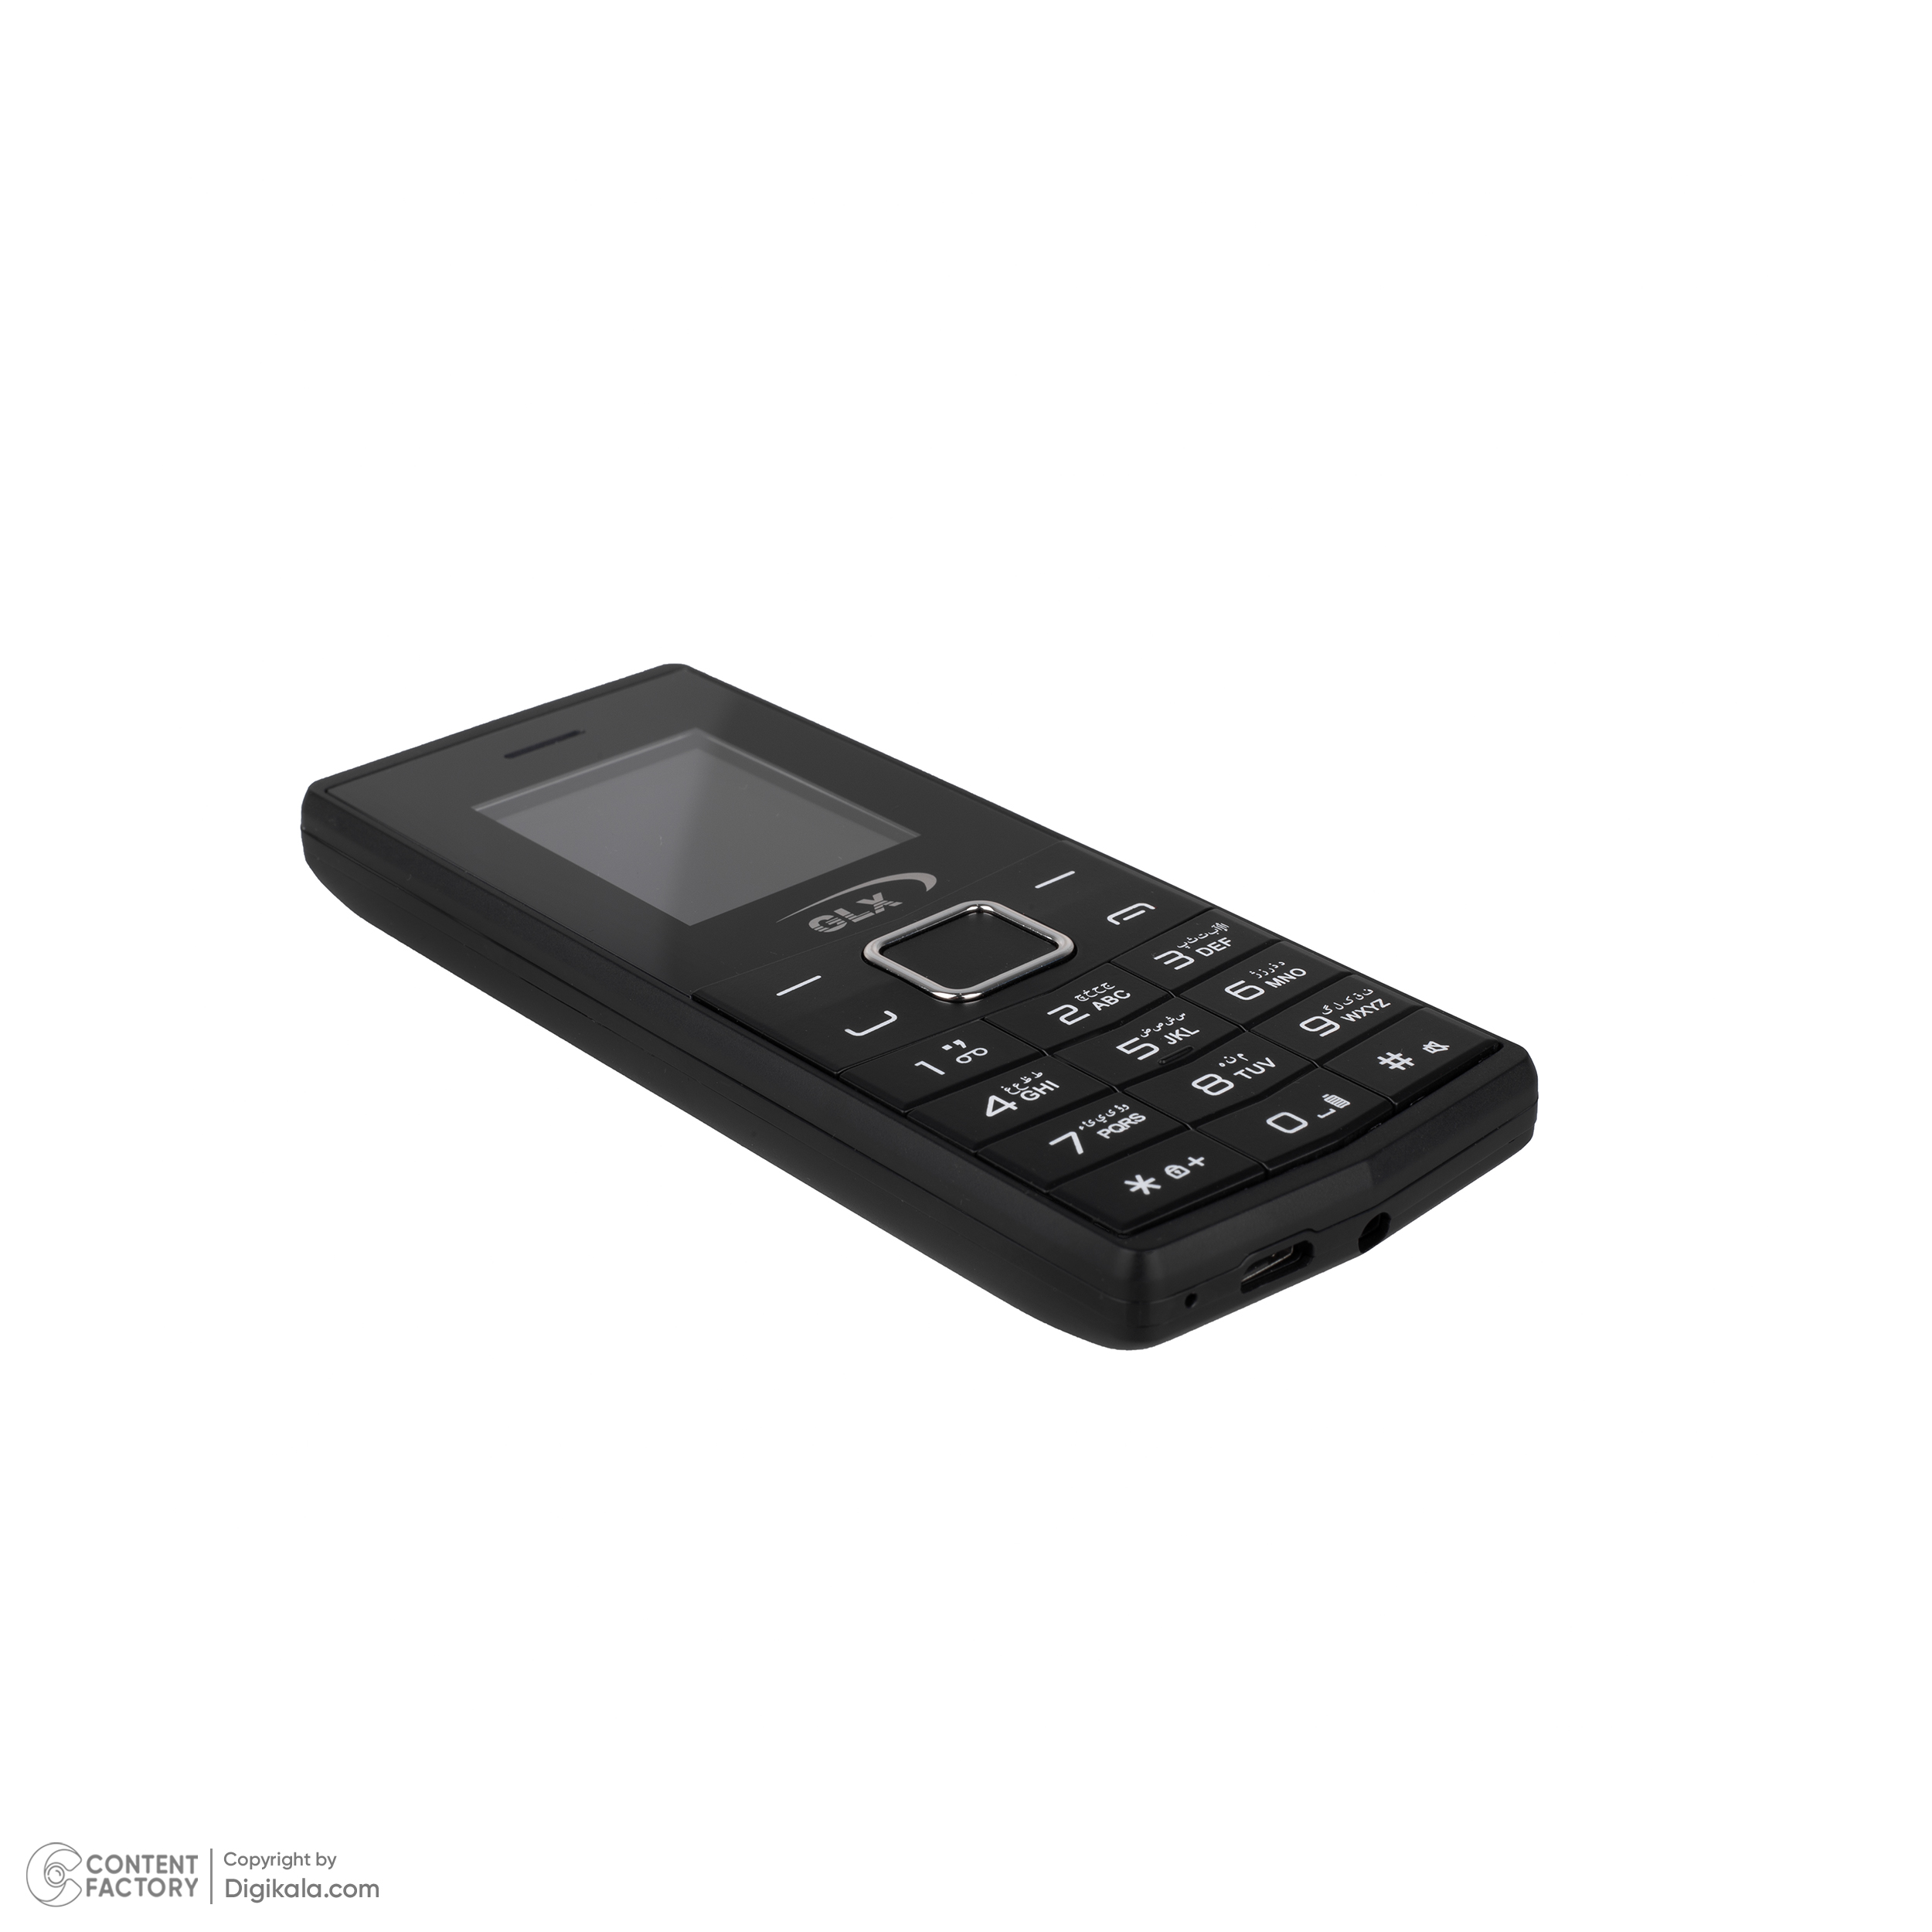 خرید اینترنتی گوشی موبایل جی ال ایکس مدل T352 دو سیم کارت ظرفیت 4 مگابایت و رم4 مگابایت (1402) - فروشگاه دیگسون